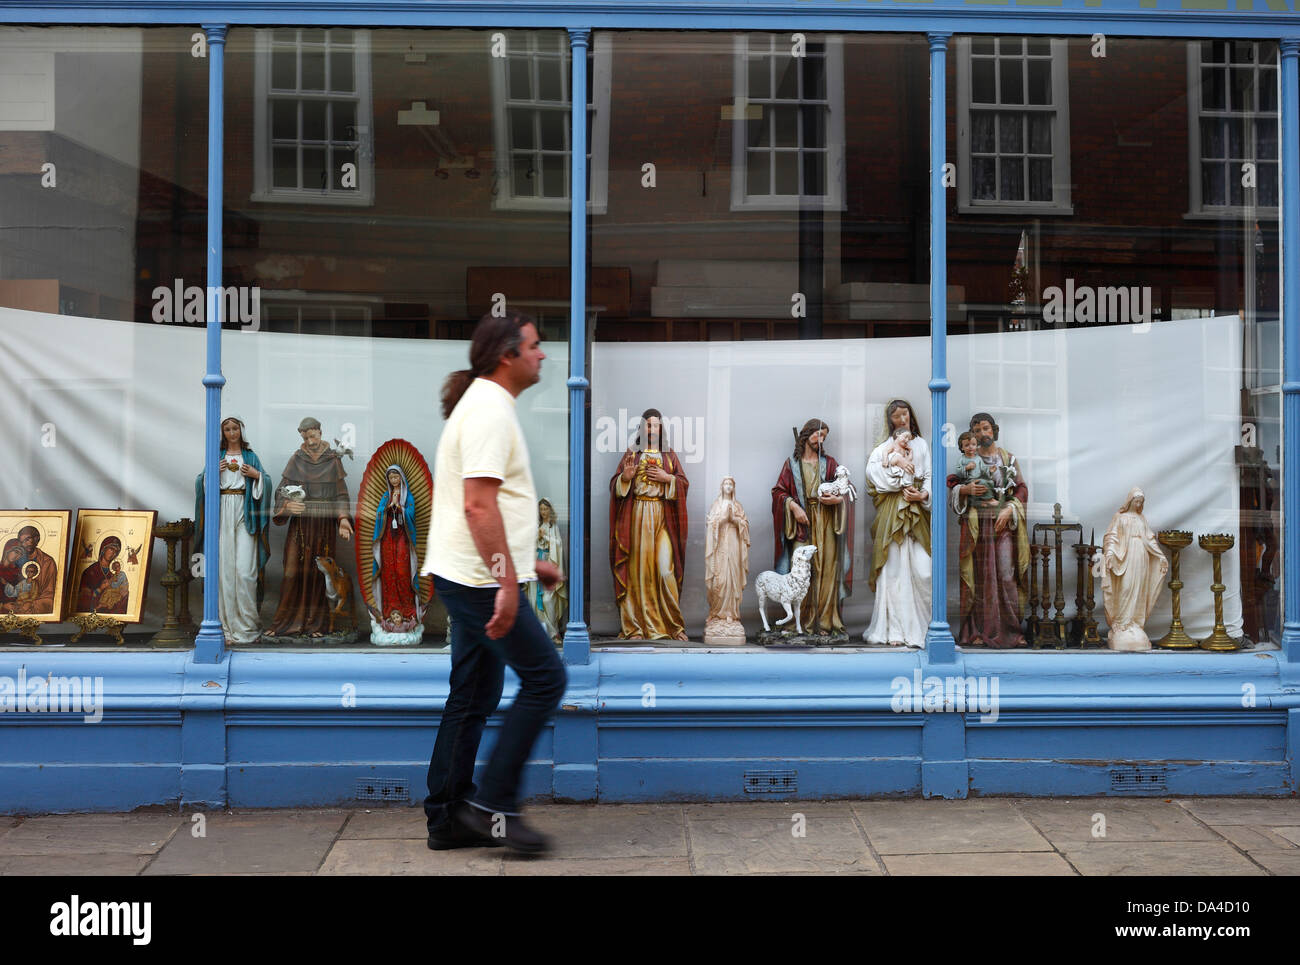 Religiöse Statuen auf dem Display in einem Schaufenster als Mann geht vorbei. Stockfoto